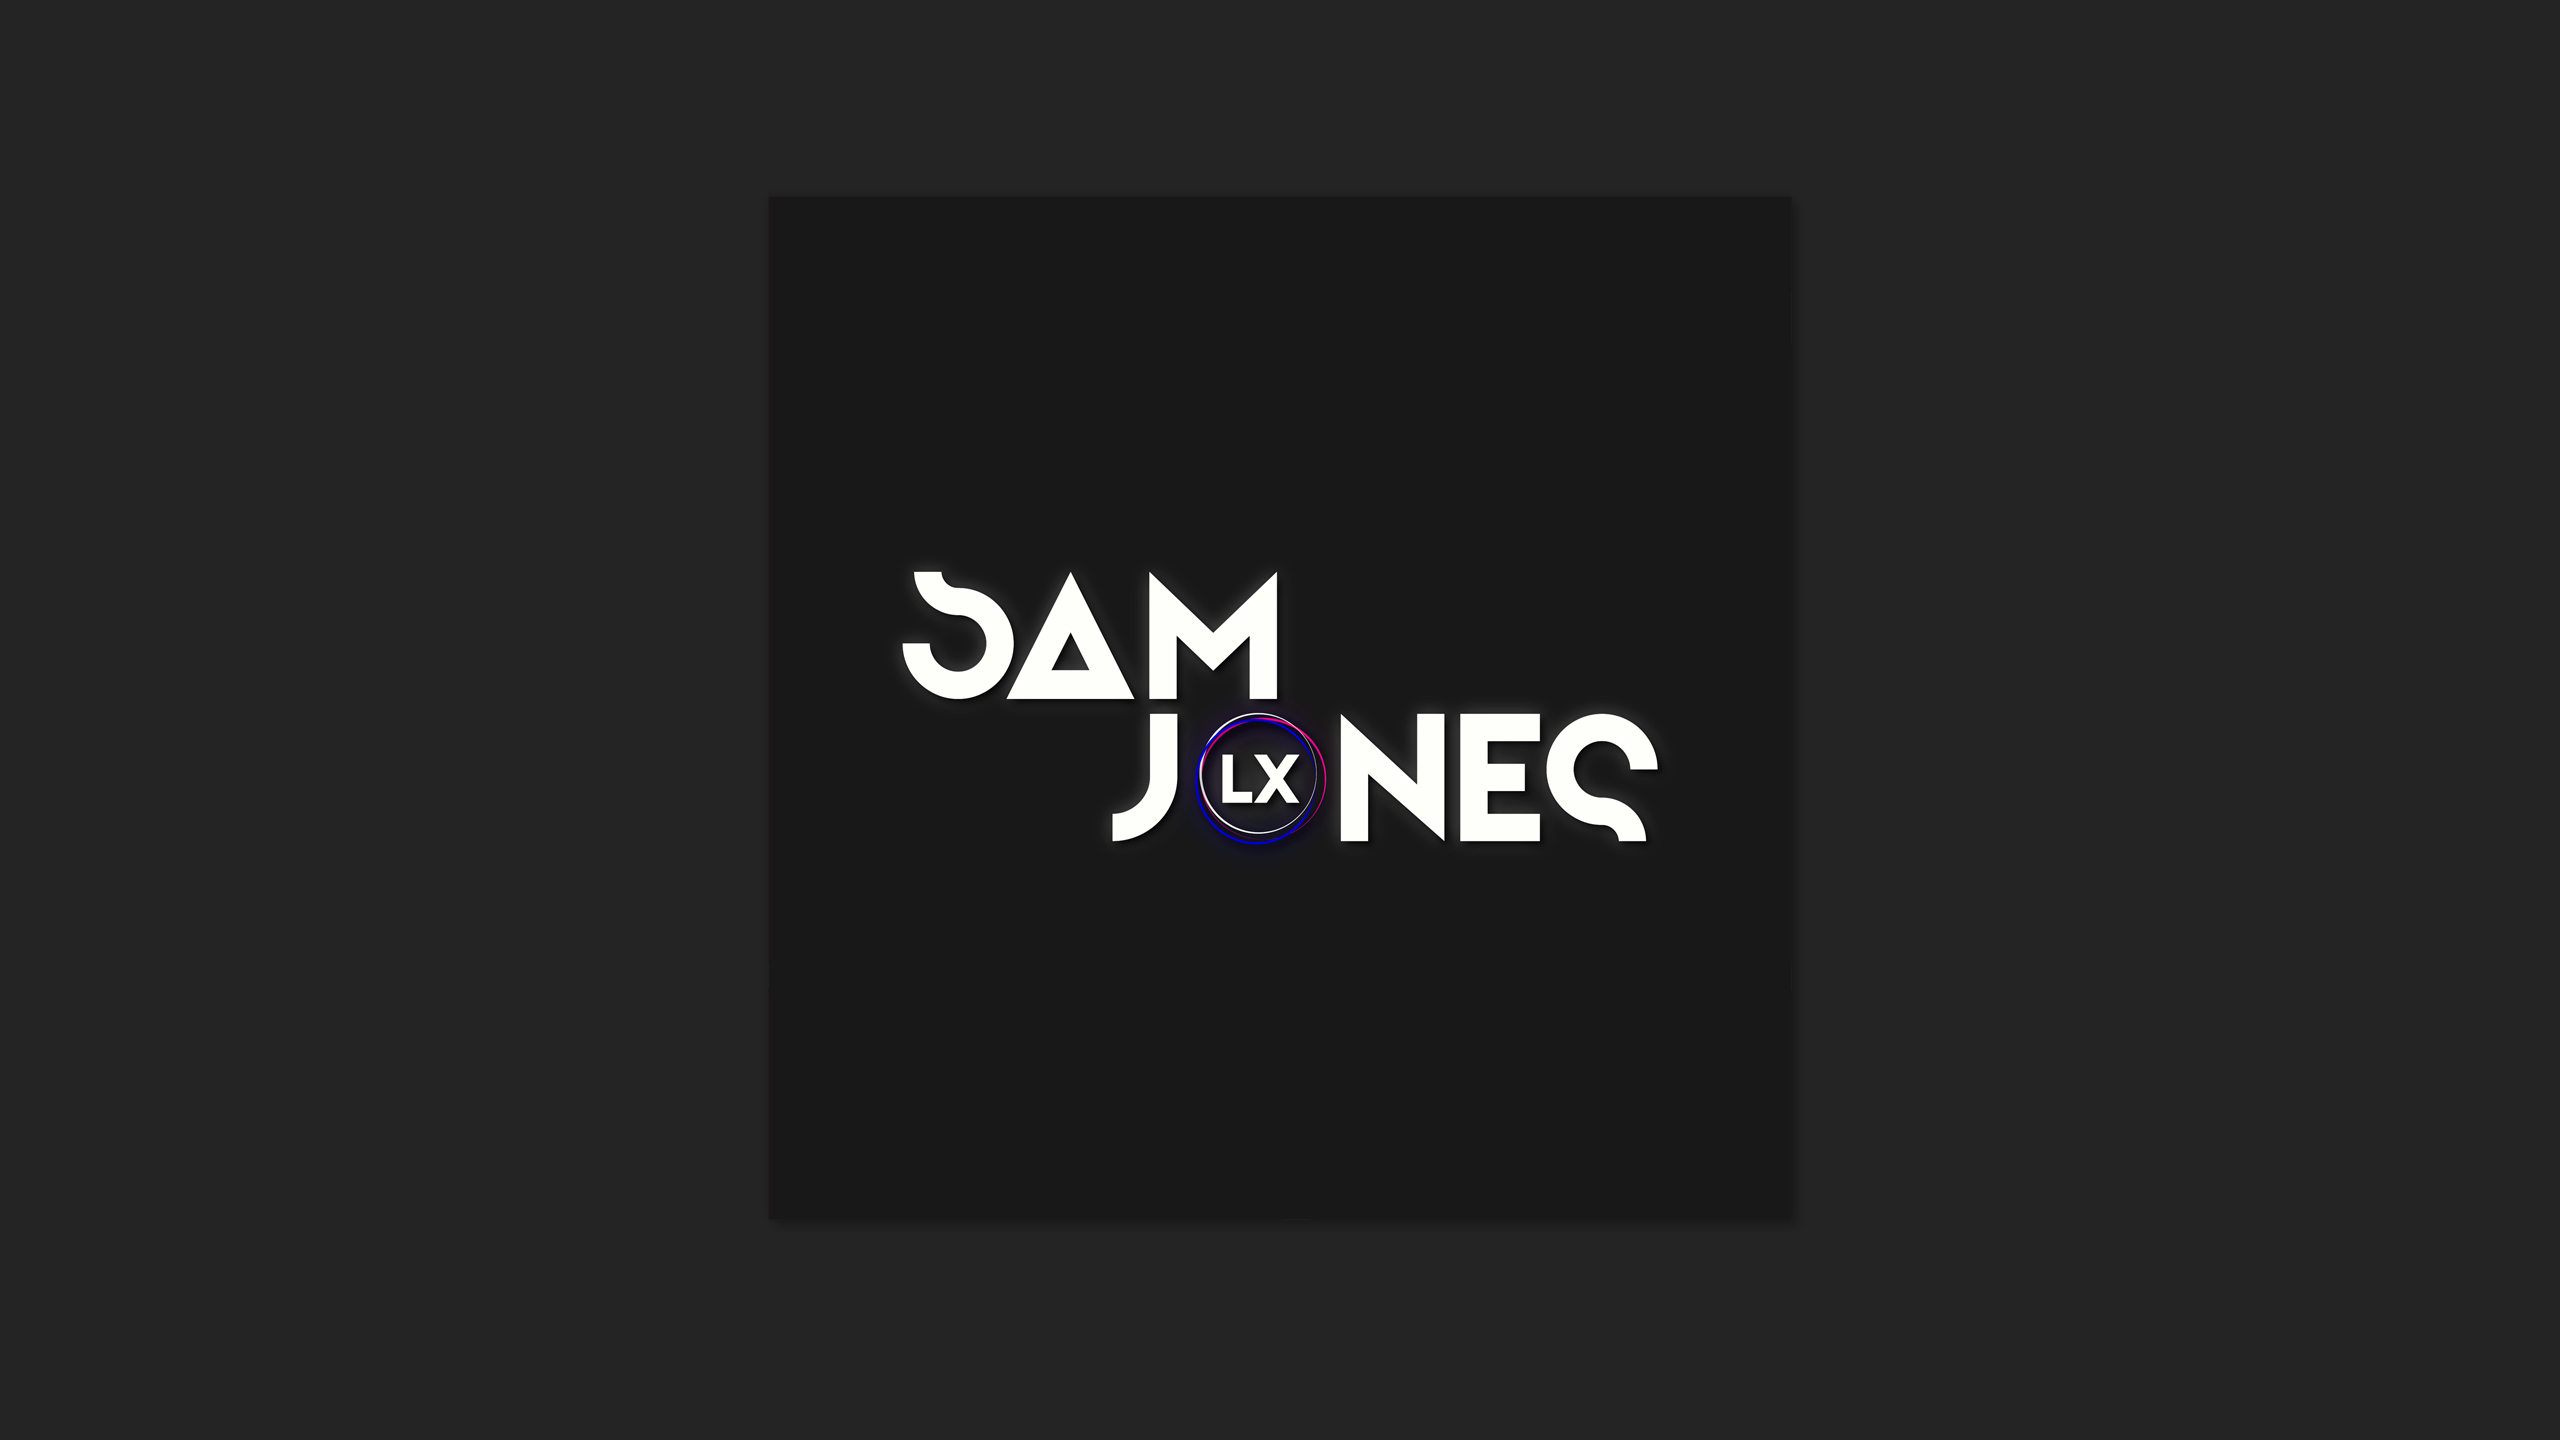 Sam Jones LX logo designed by Dephined